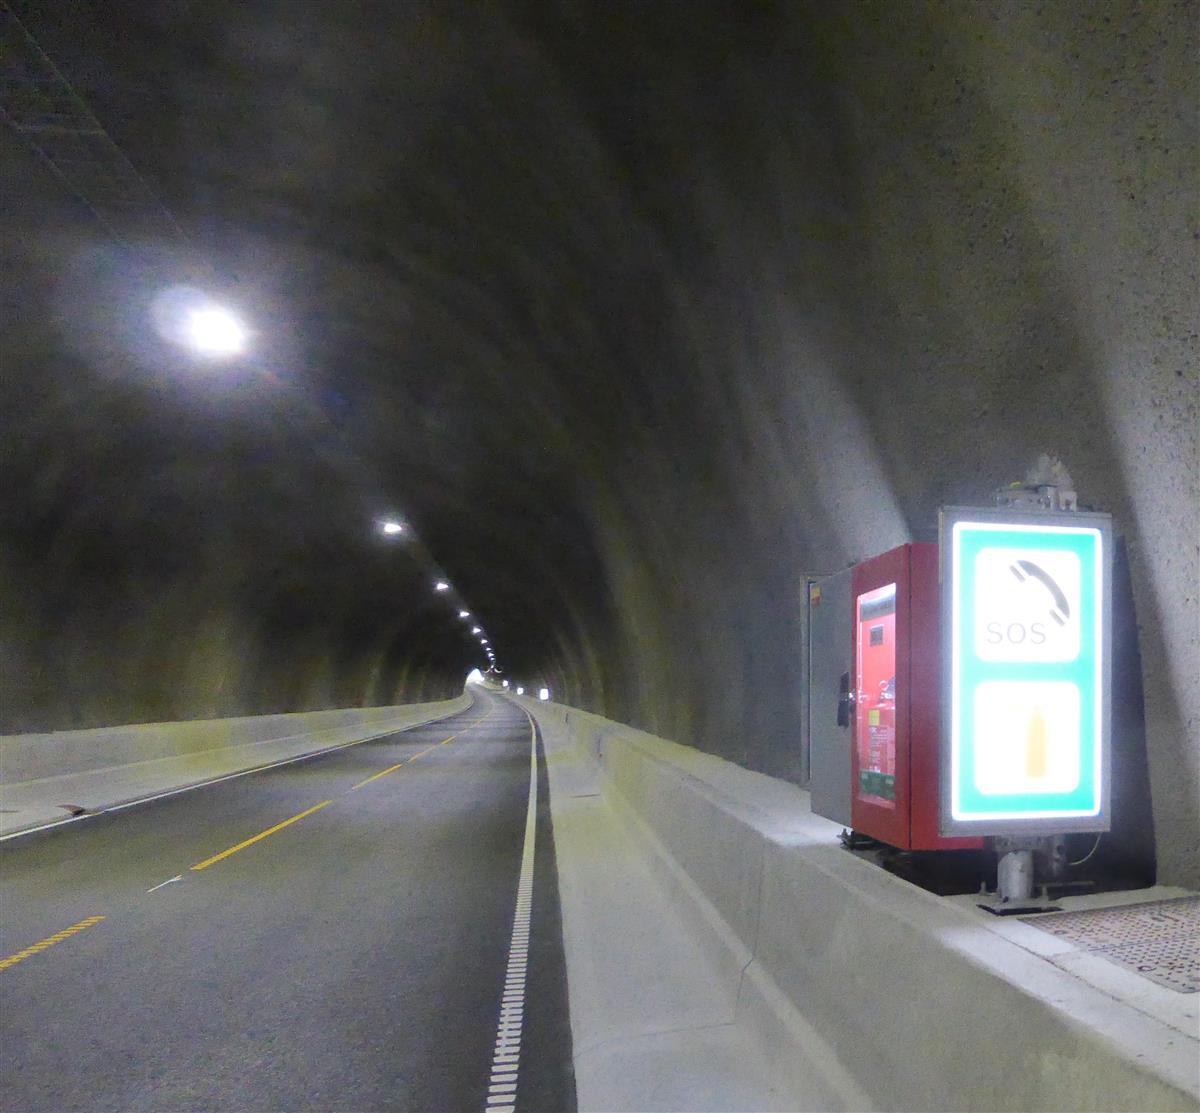 Tom tunnel, to kjørefelt. Rødt skap som viser brannslukker og SOS-skilt.  - Klikk for stort bilde